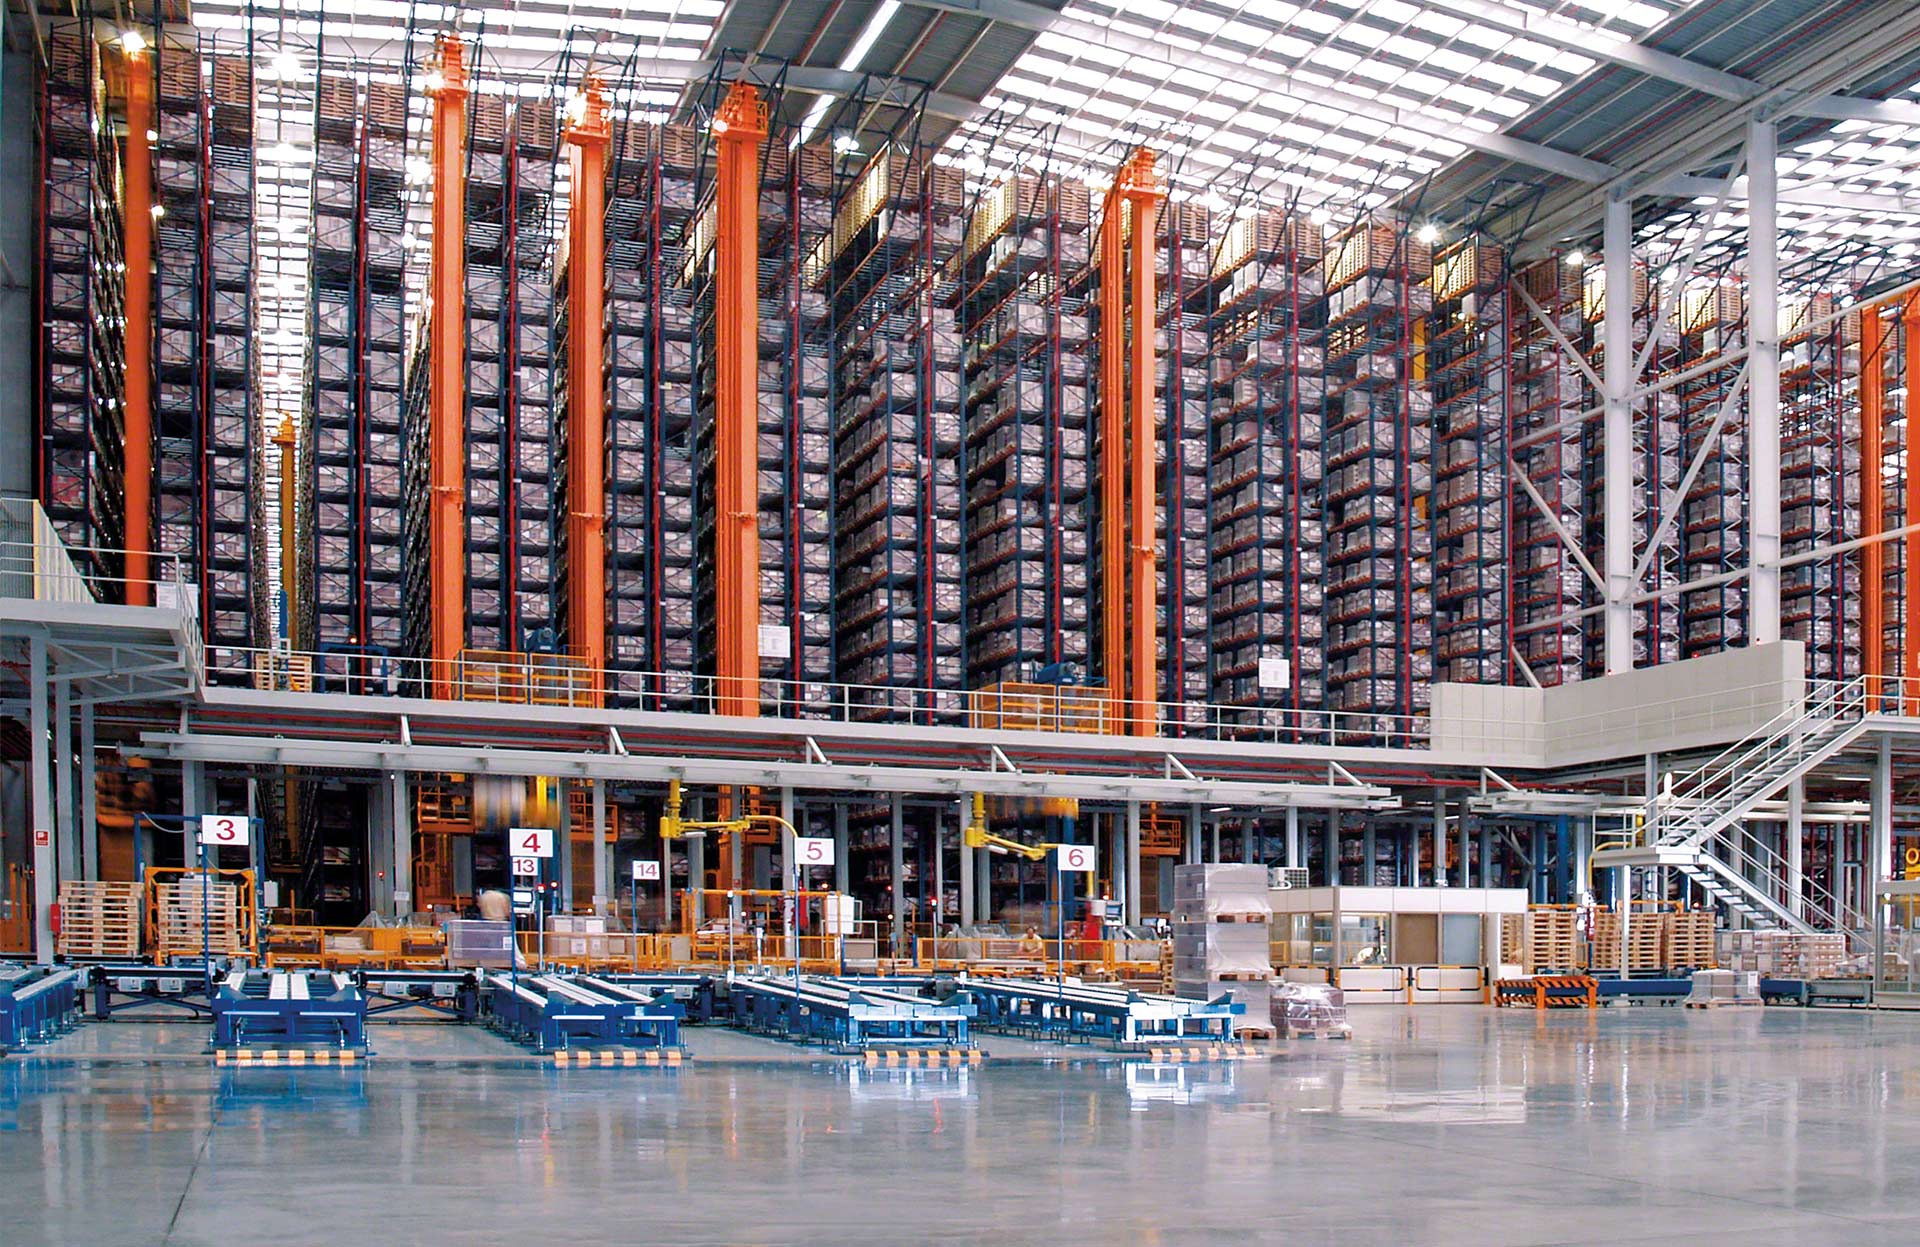 Los transelevadores incrementan la productividad del almacén al automatizar el depósito y la extracción de palets